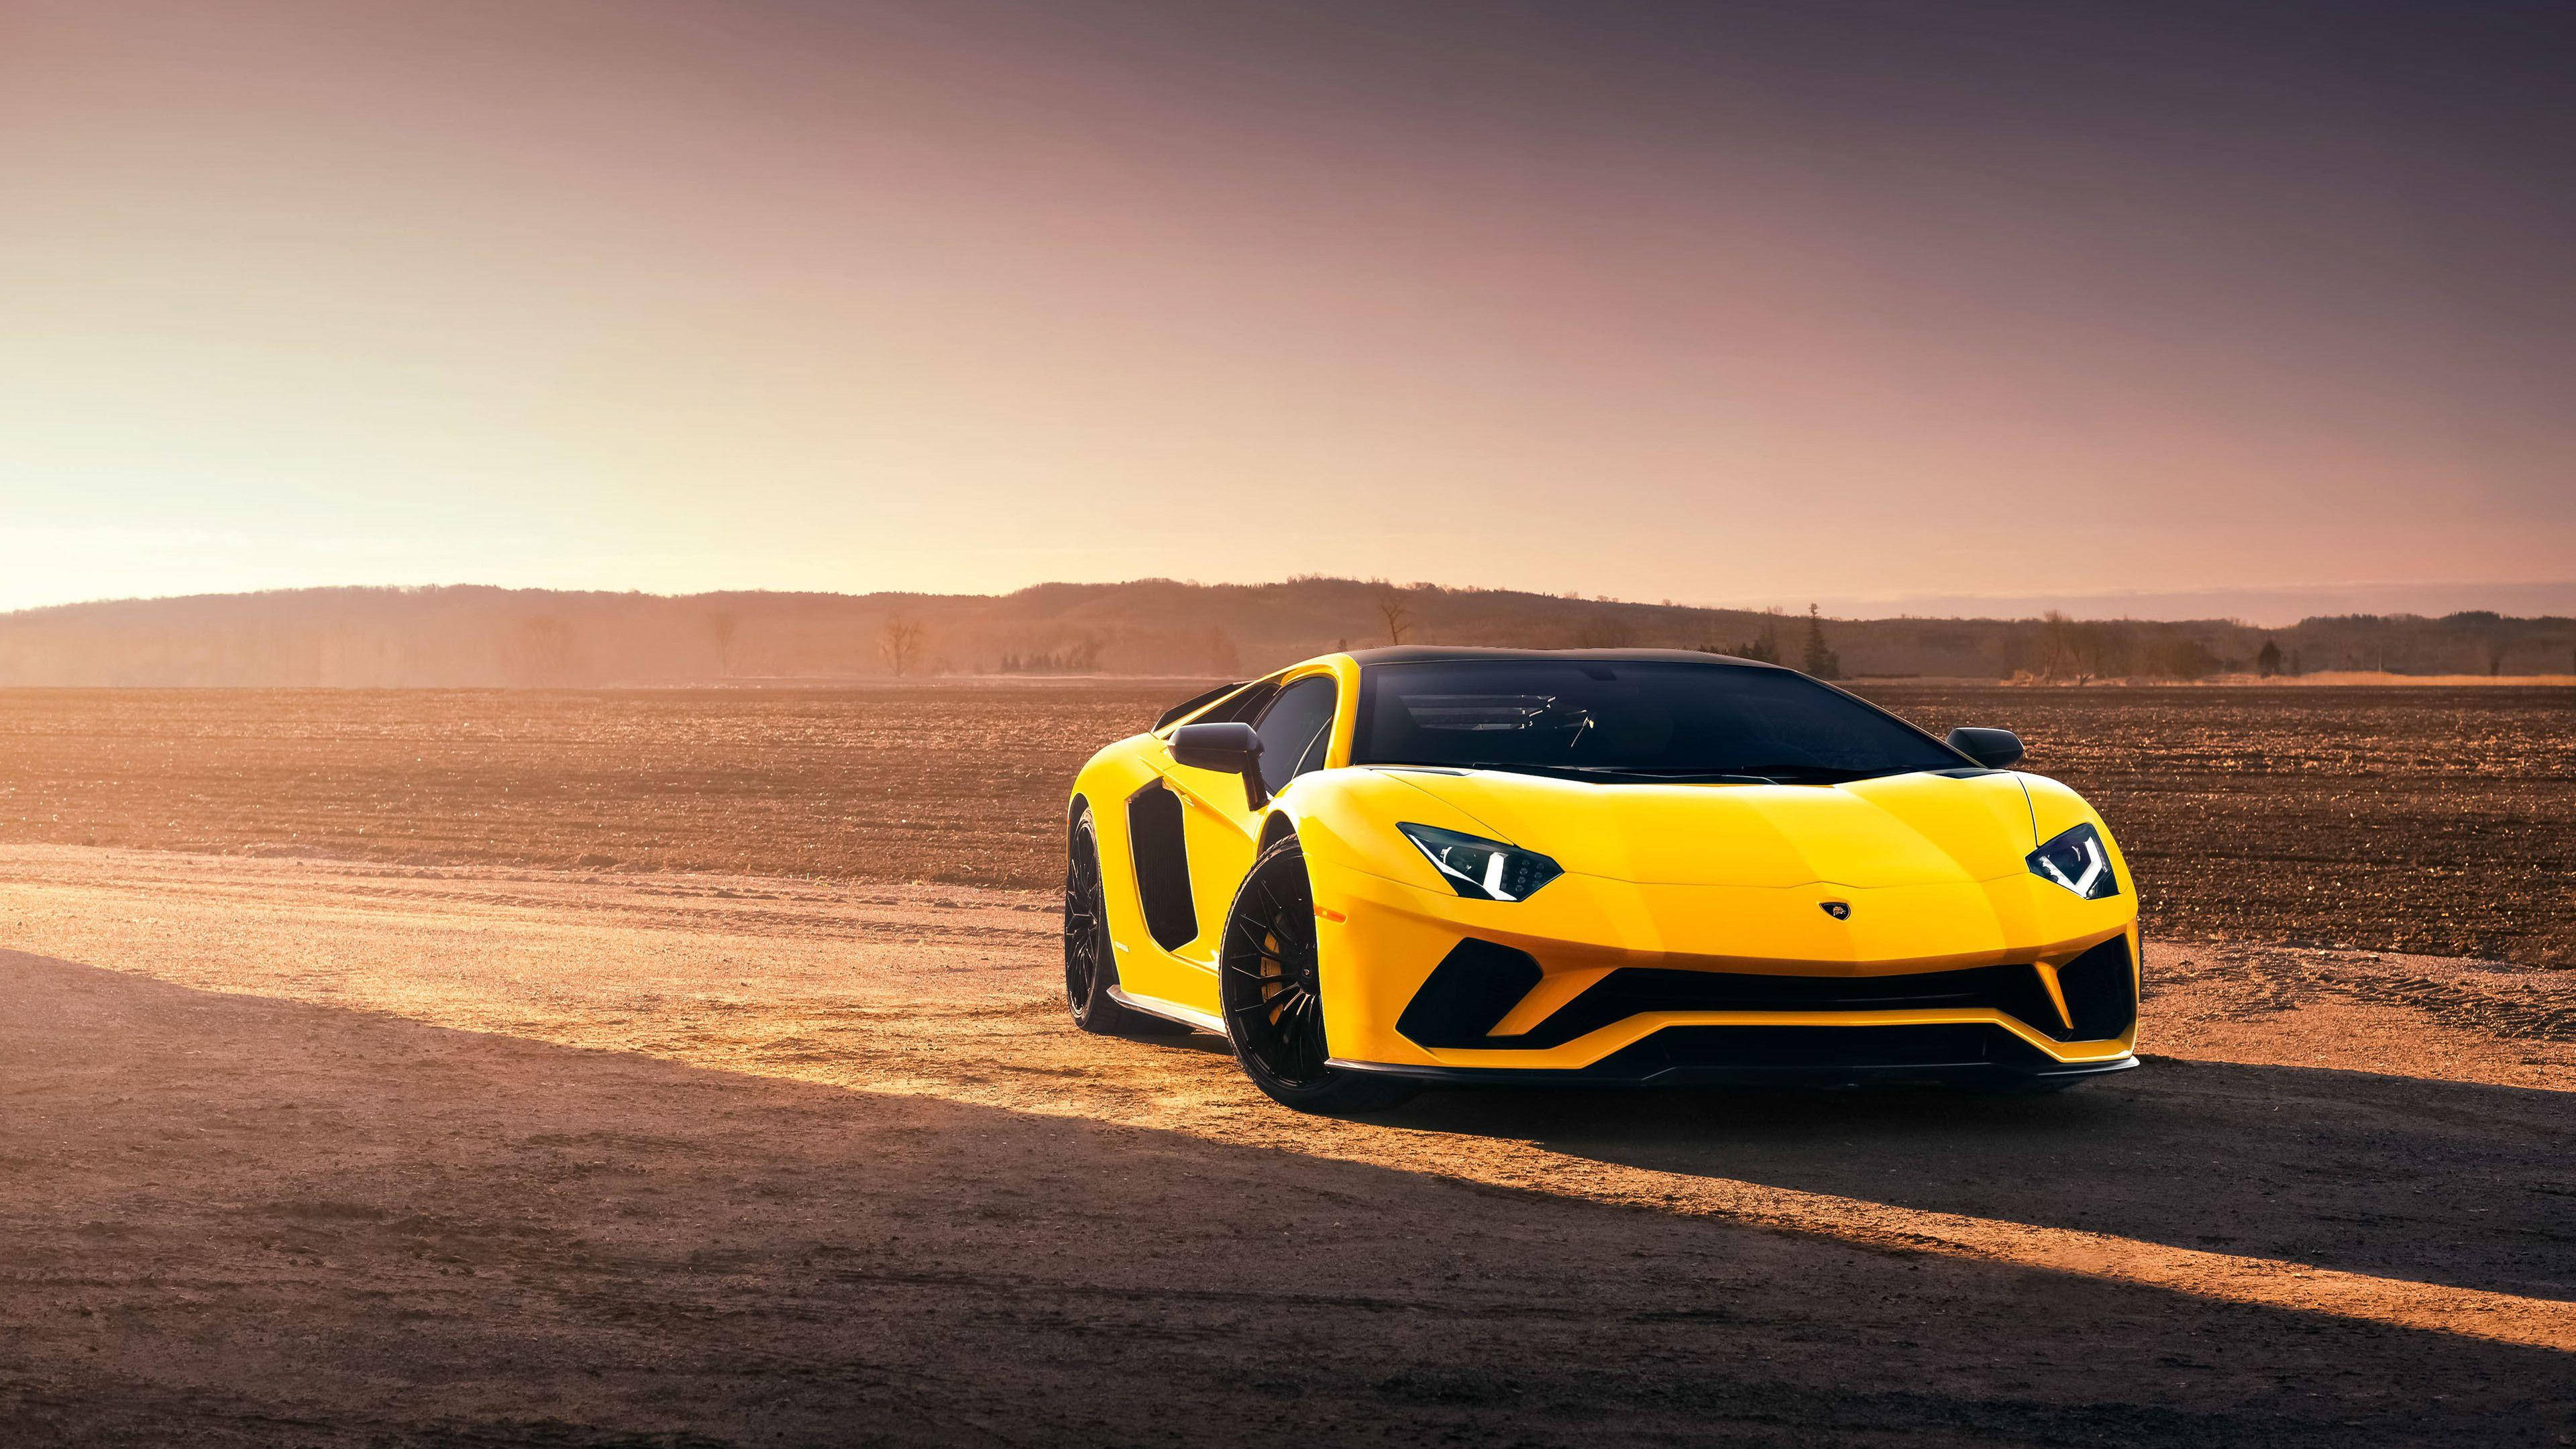 Download Cool Cars: Yellow Slim Lamborghini Wallpaper | Wallpapers.com